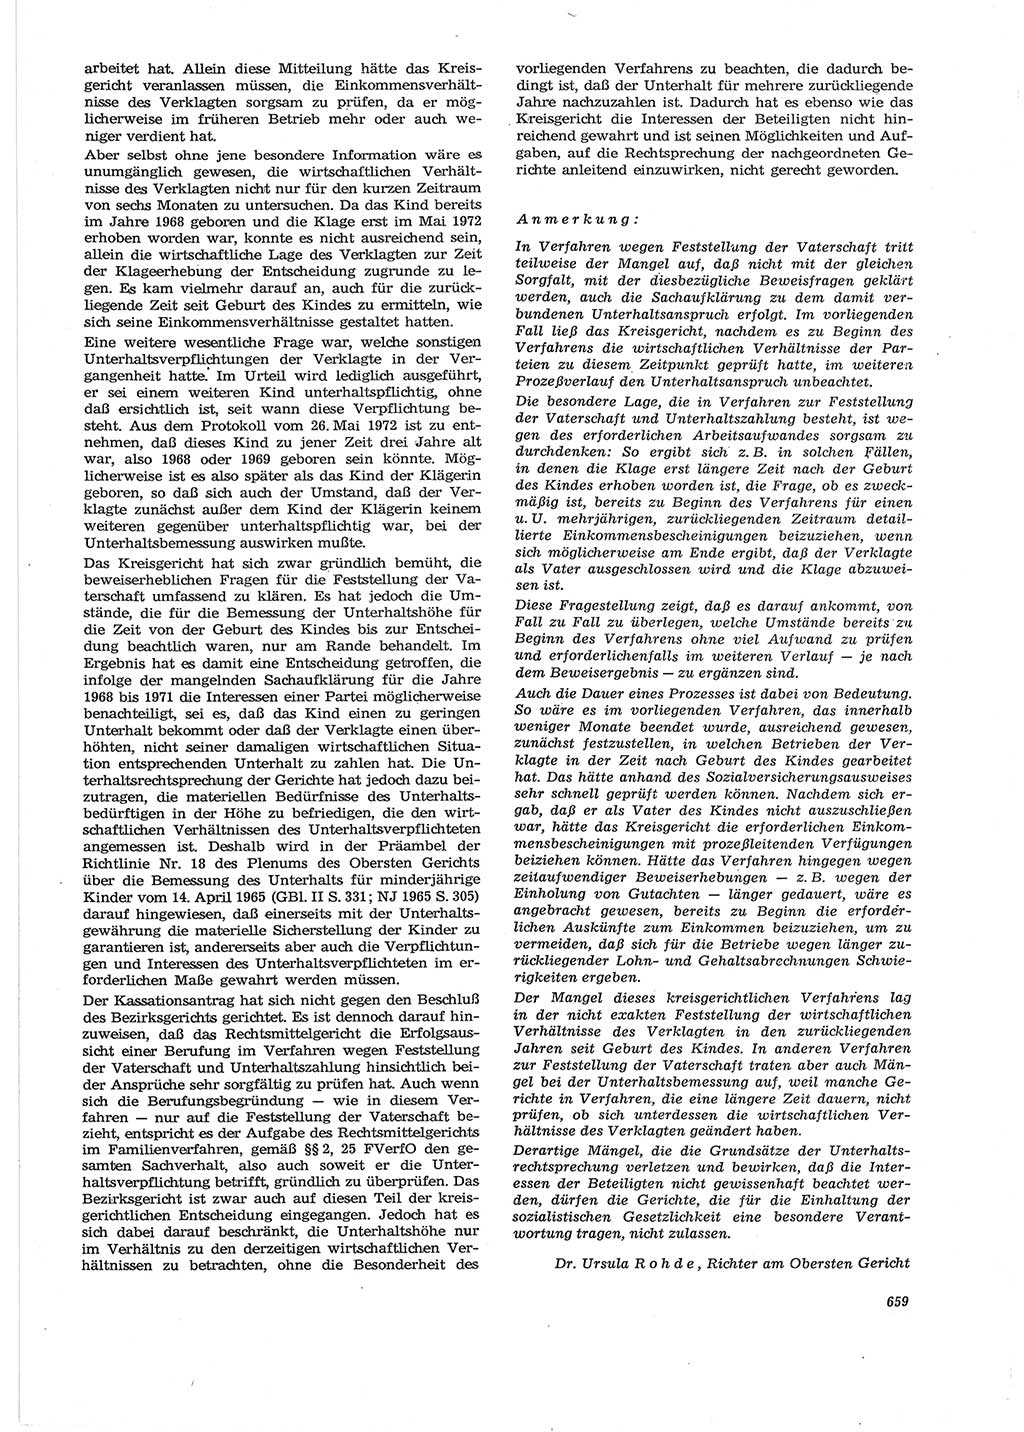 Neue Justiz (NJ), Zeitschrift für Recht und Rechtswissenschaft [Deutsche Demokratische Republik (DDR)], 28. Jahrgang 1974, Seite 659 (NJ DDR 1974, S. 659)